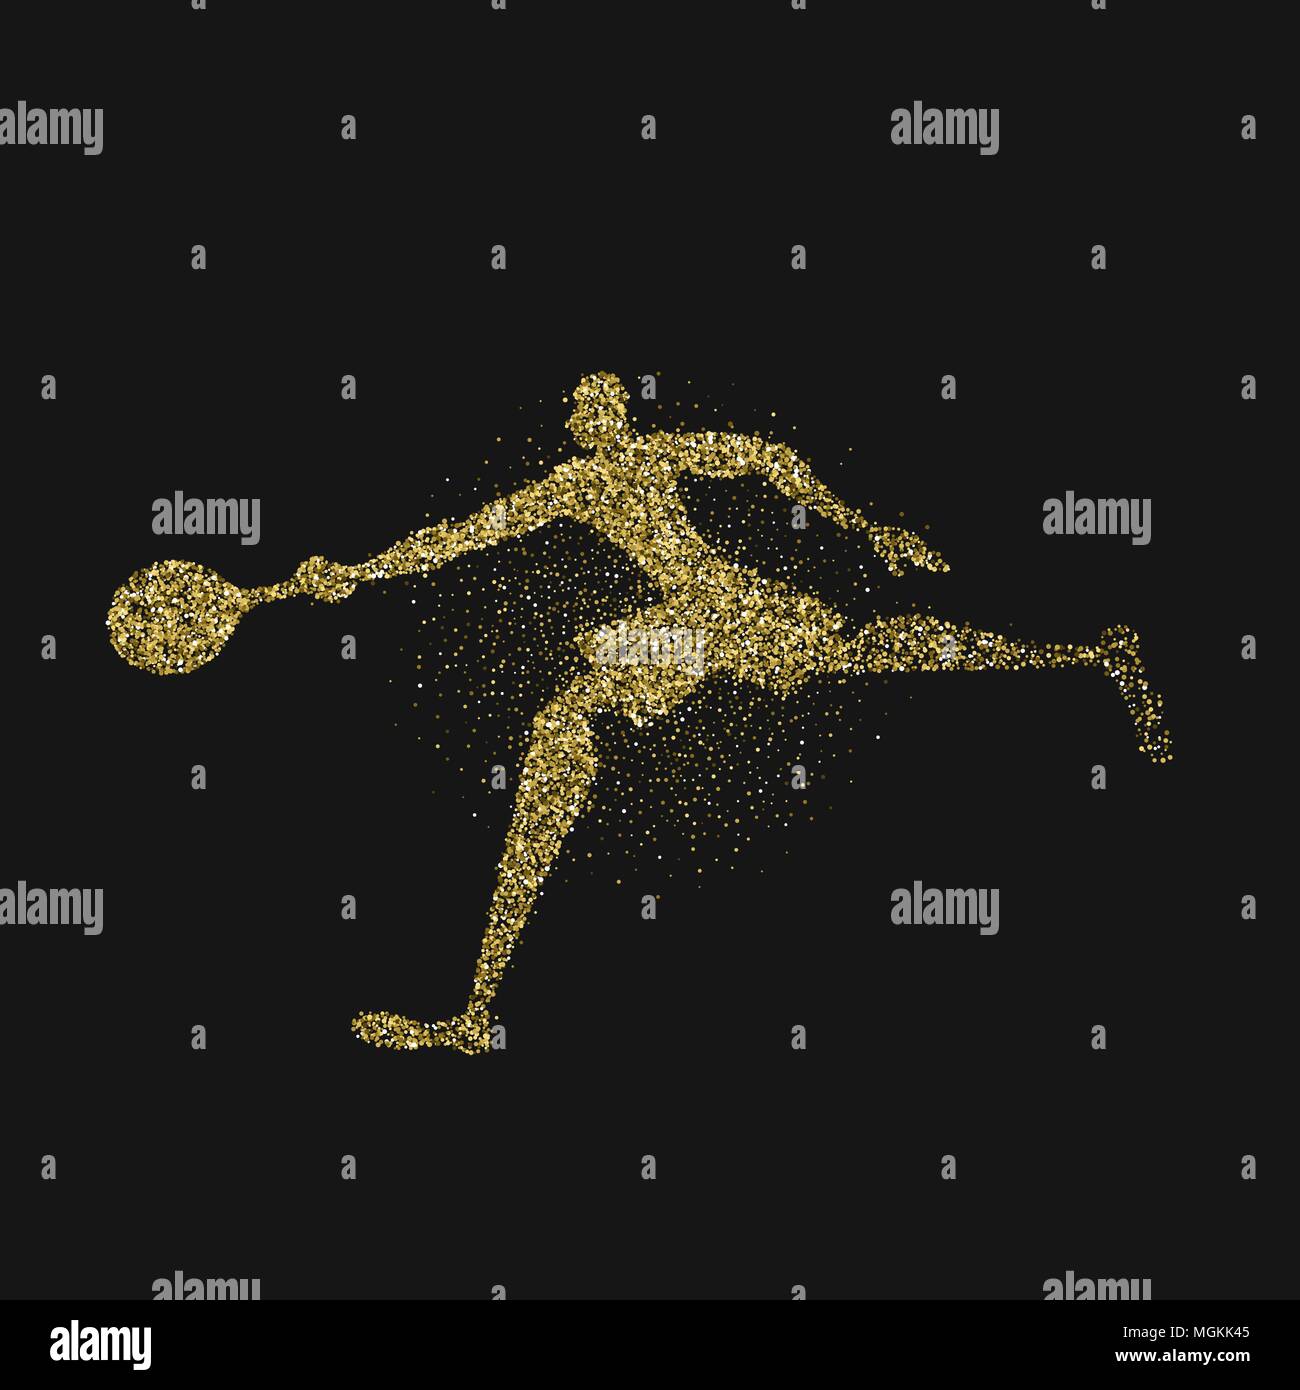 Tennis Player Silhouette aus gold Glitter splash auf schwarzem Hintergrund. Goldene Farbe Athlet Mann laufen mit Schläger. EPS 10 Vektor. Stock Vektor